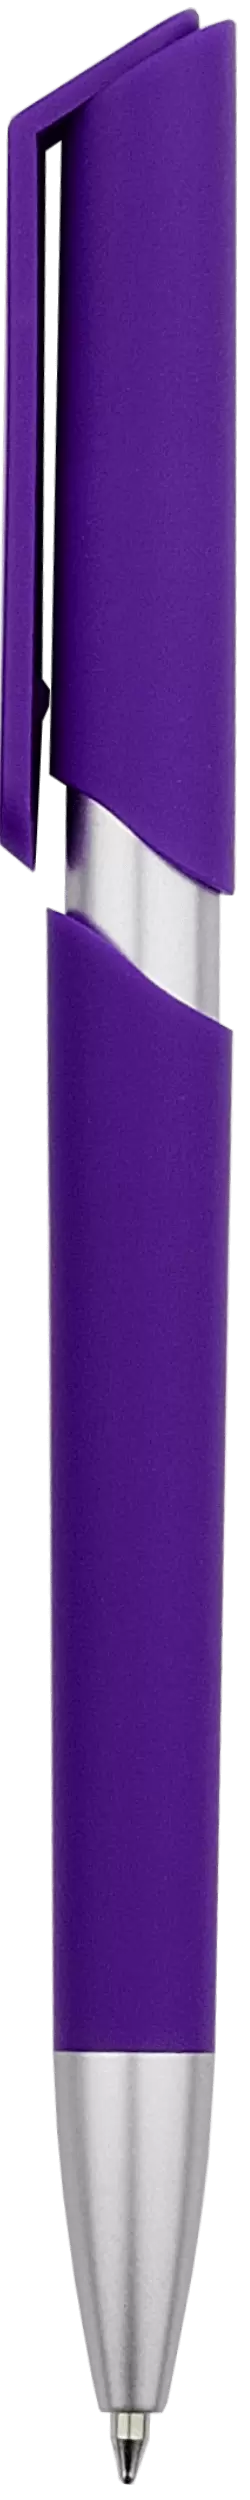 Ручка ZOOM SOFT Фиолетовая 2020-11